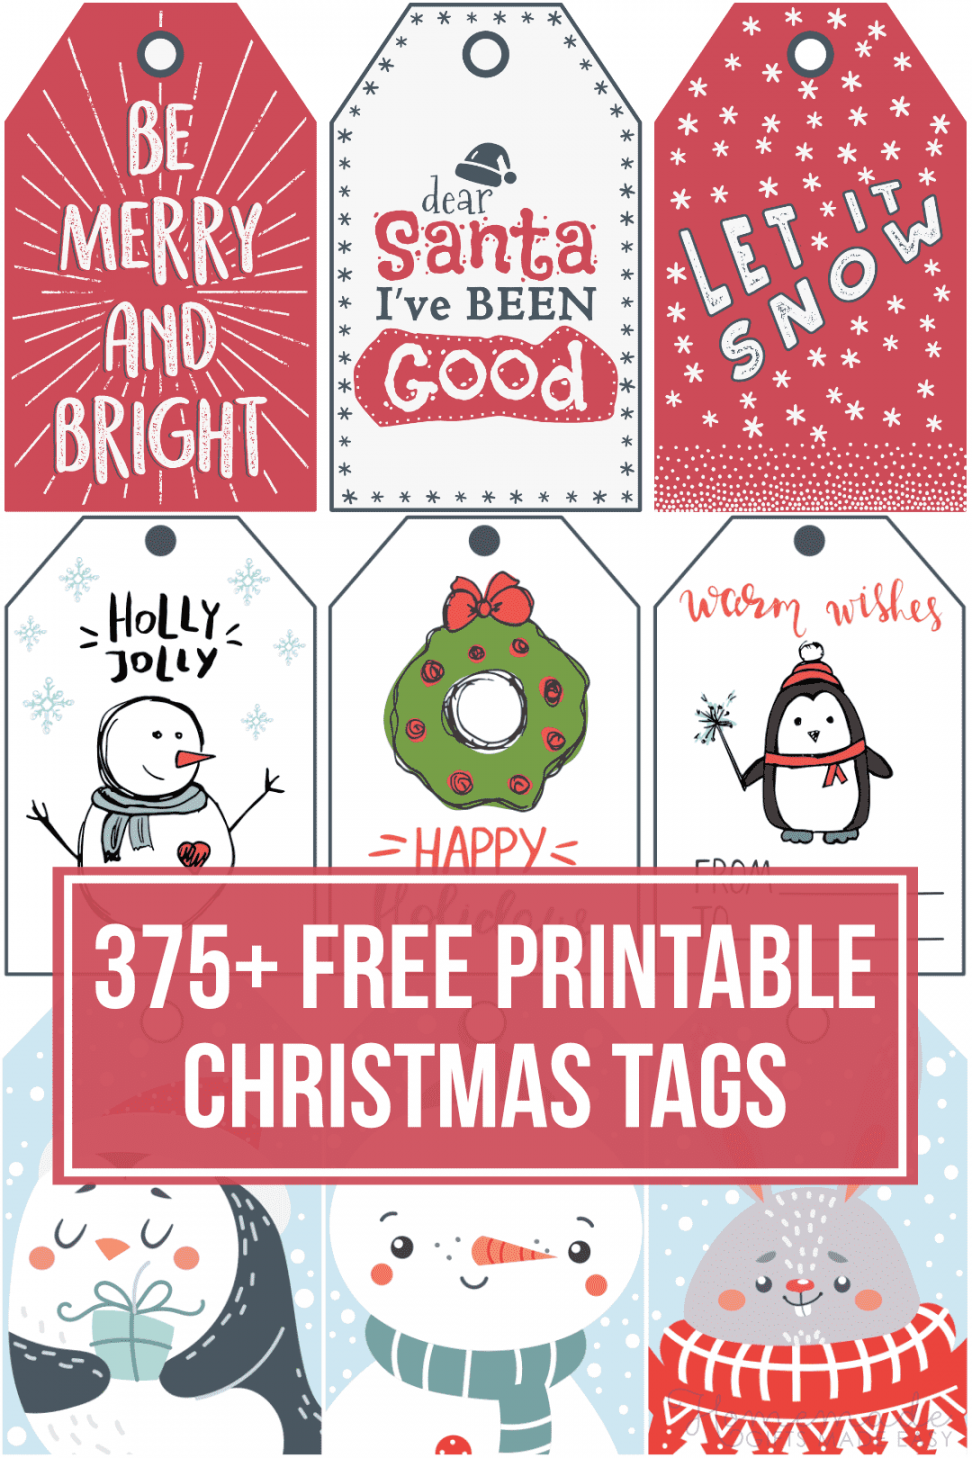 Free Christmas Tags Printable - Printable - + Free Printable Christmas Tags for your Holiday Gifts